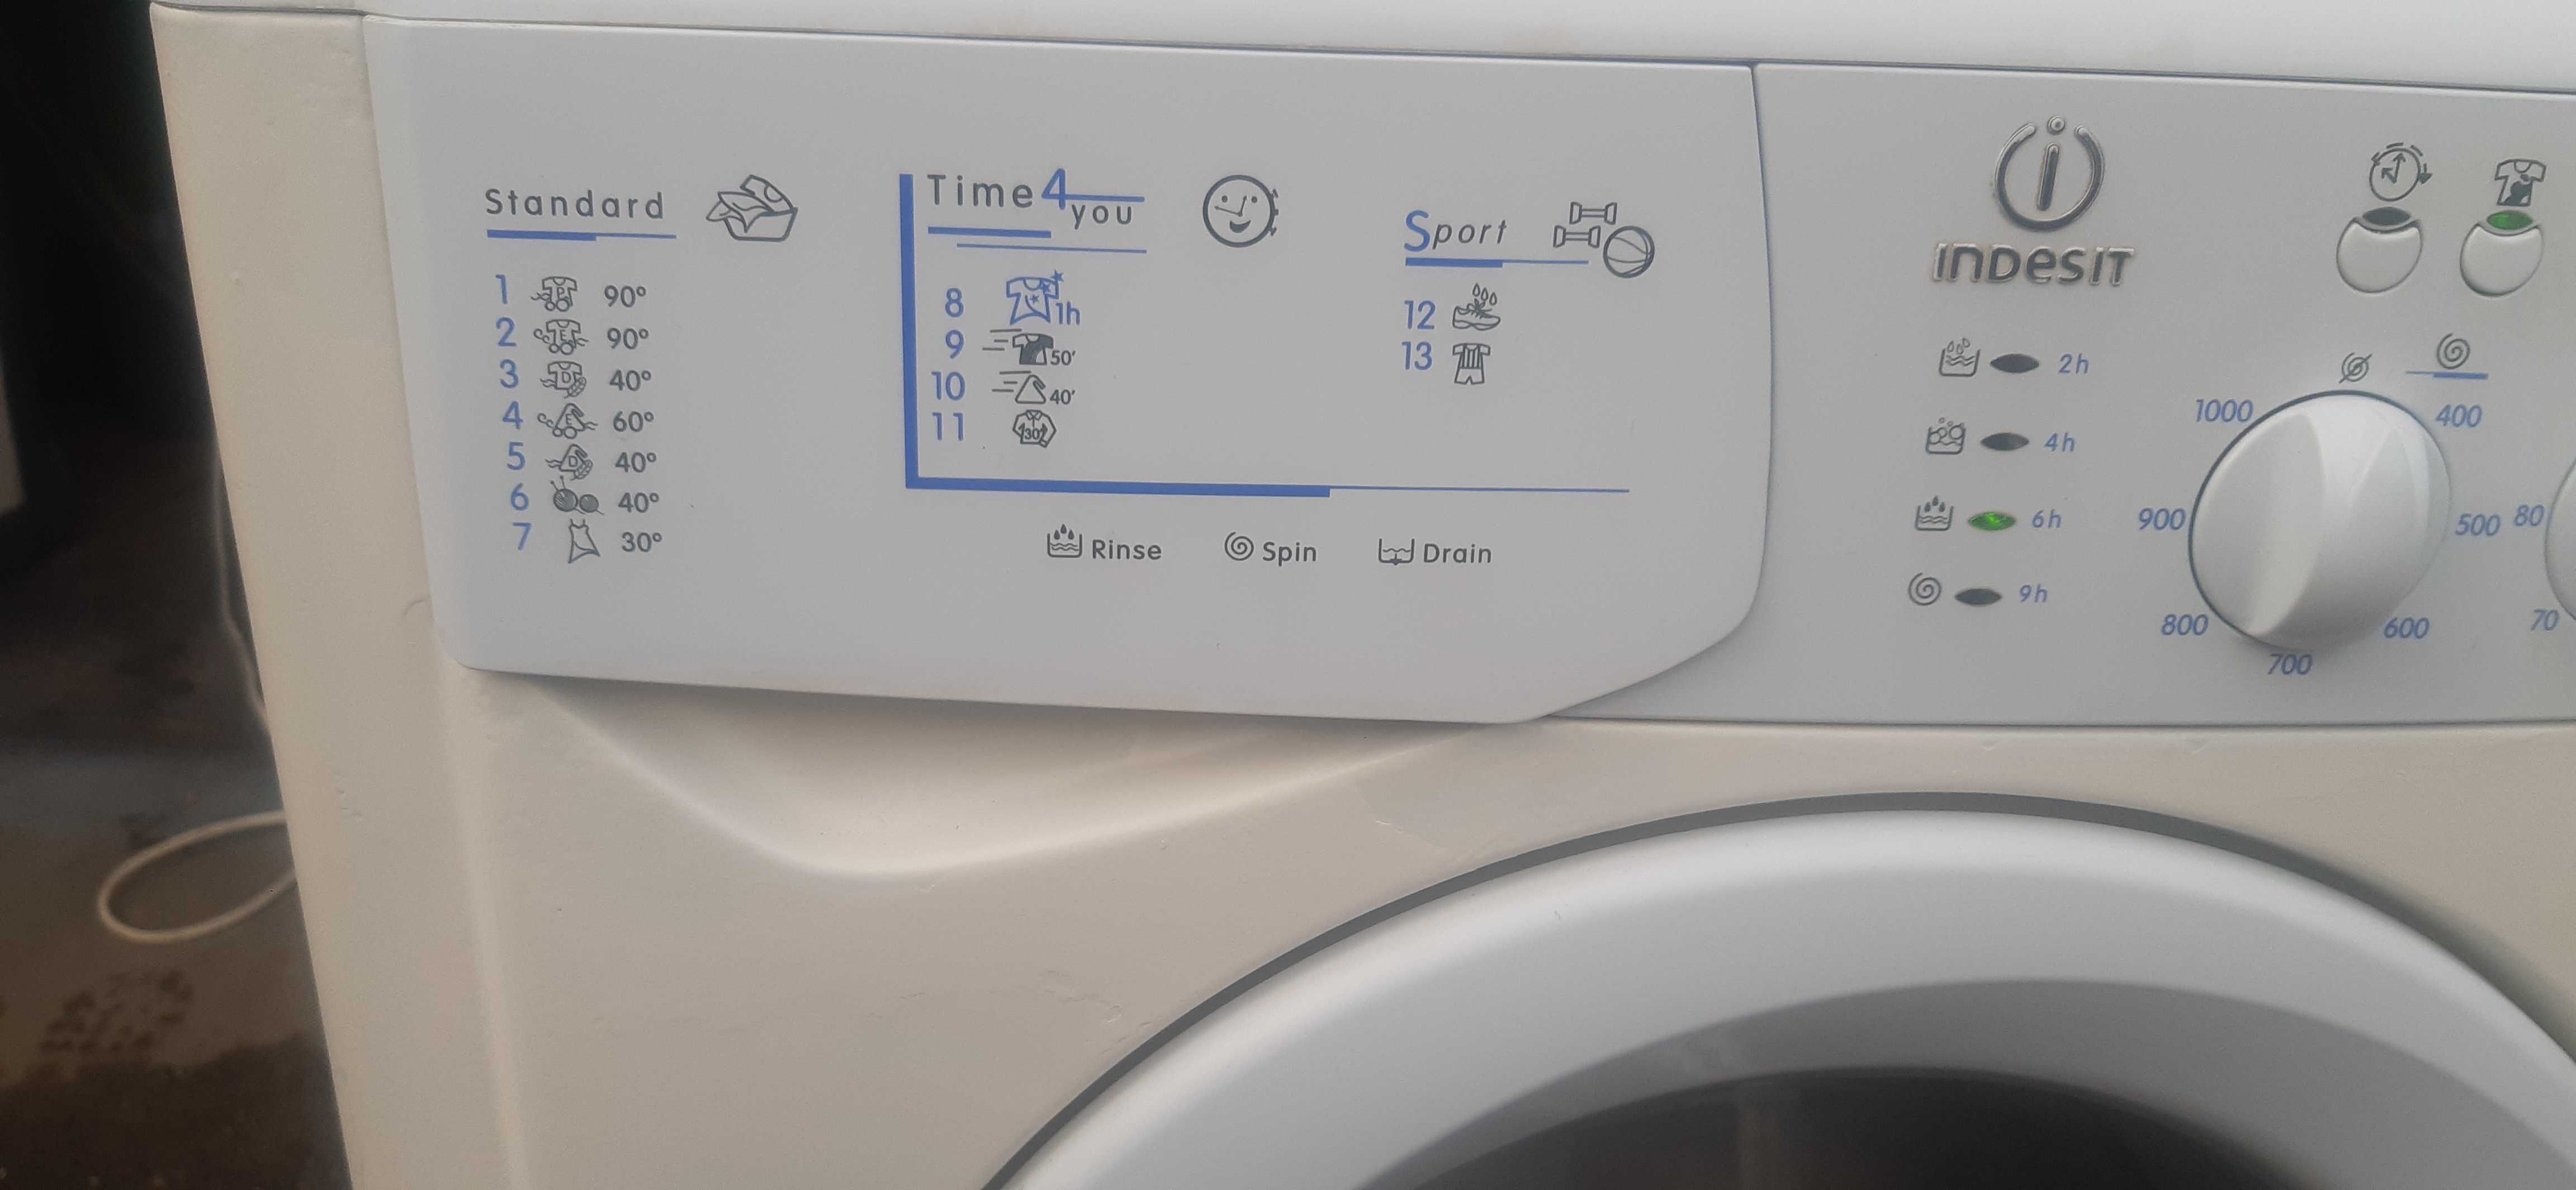 Продам стиральную машину Indesit.